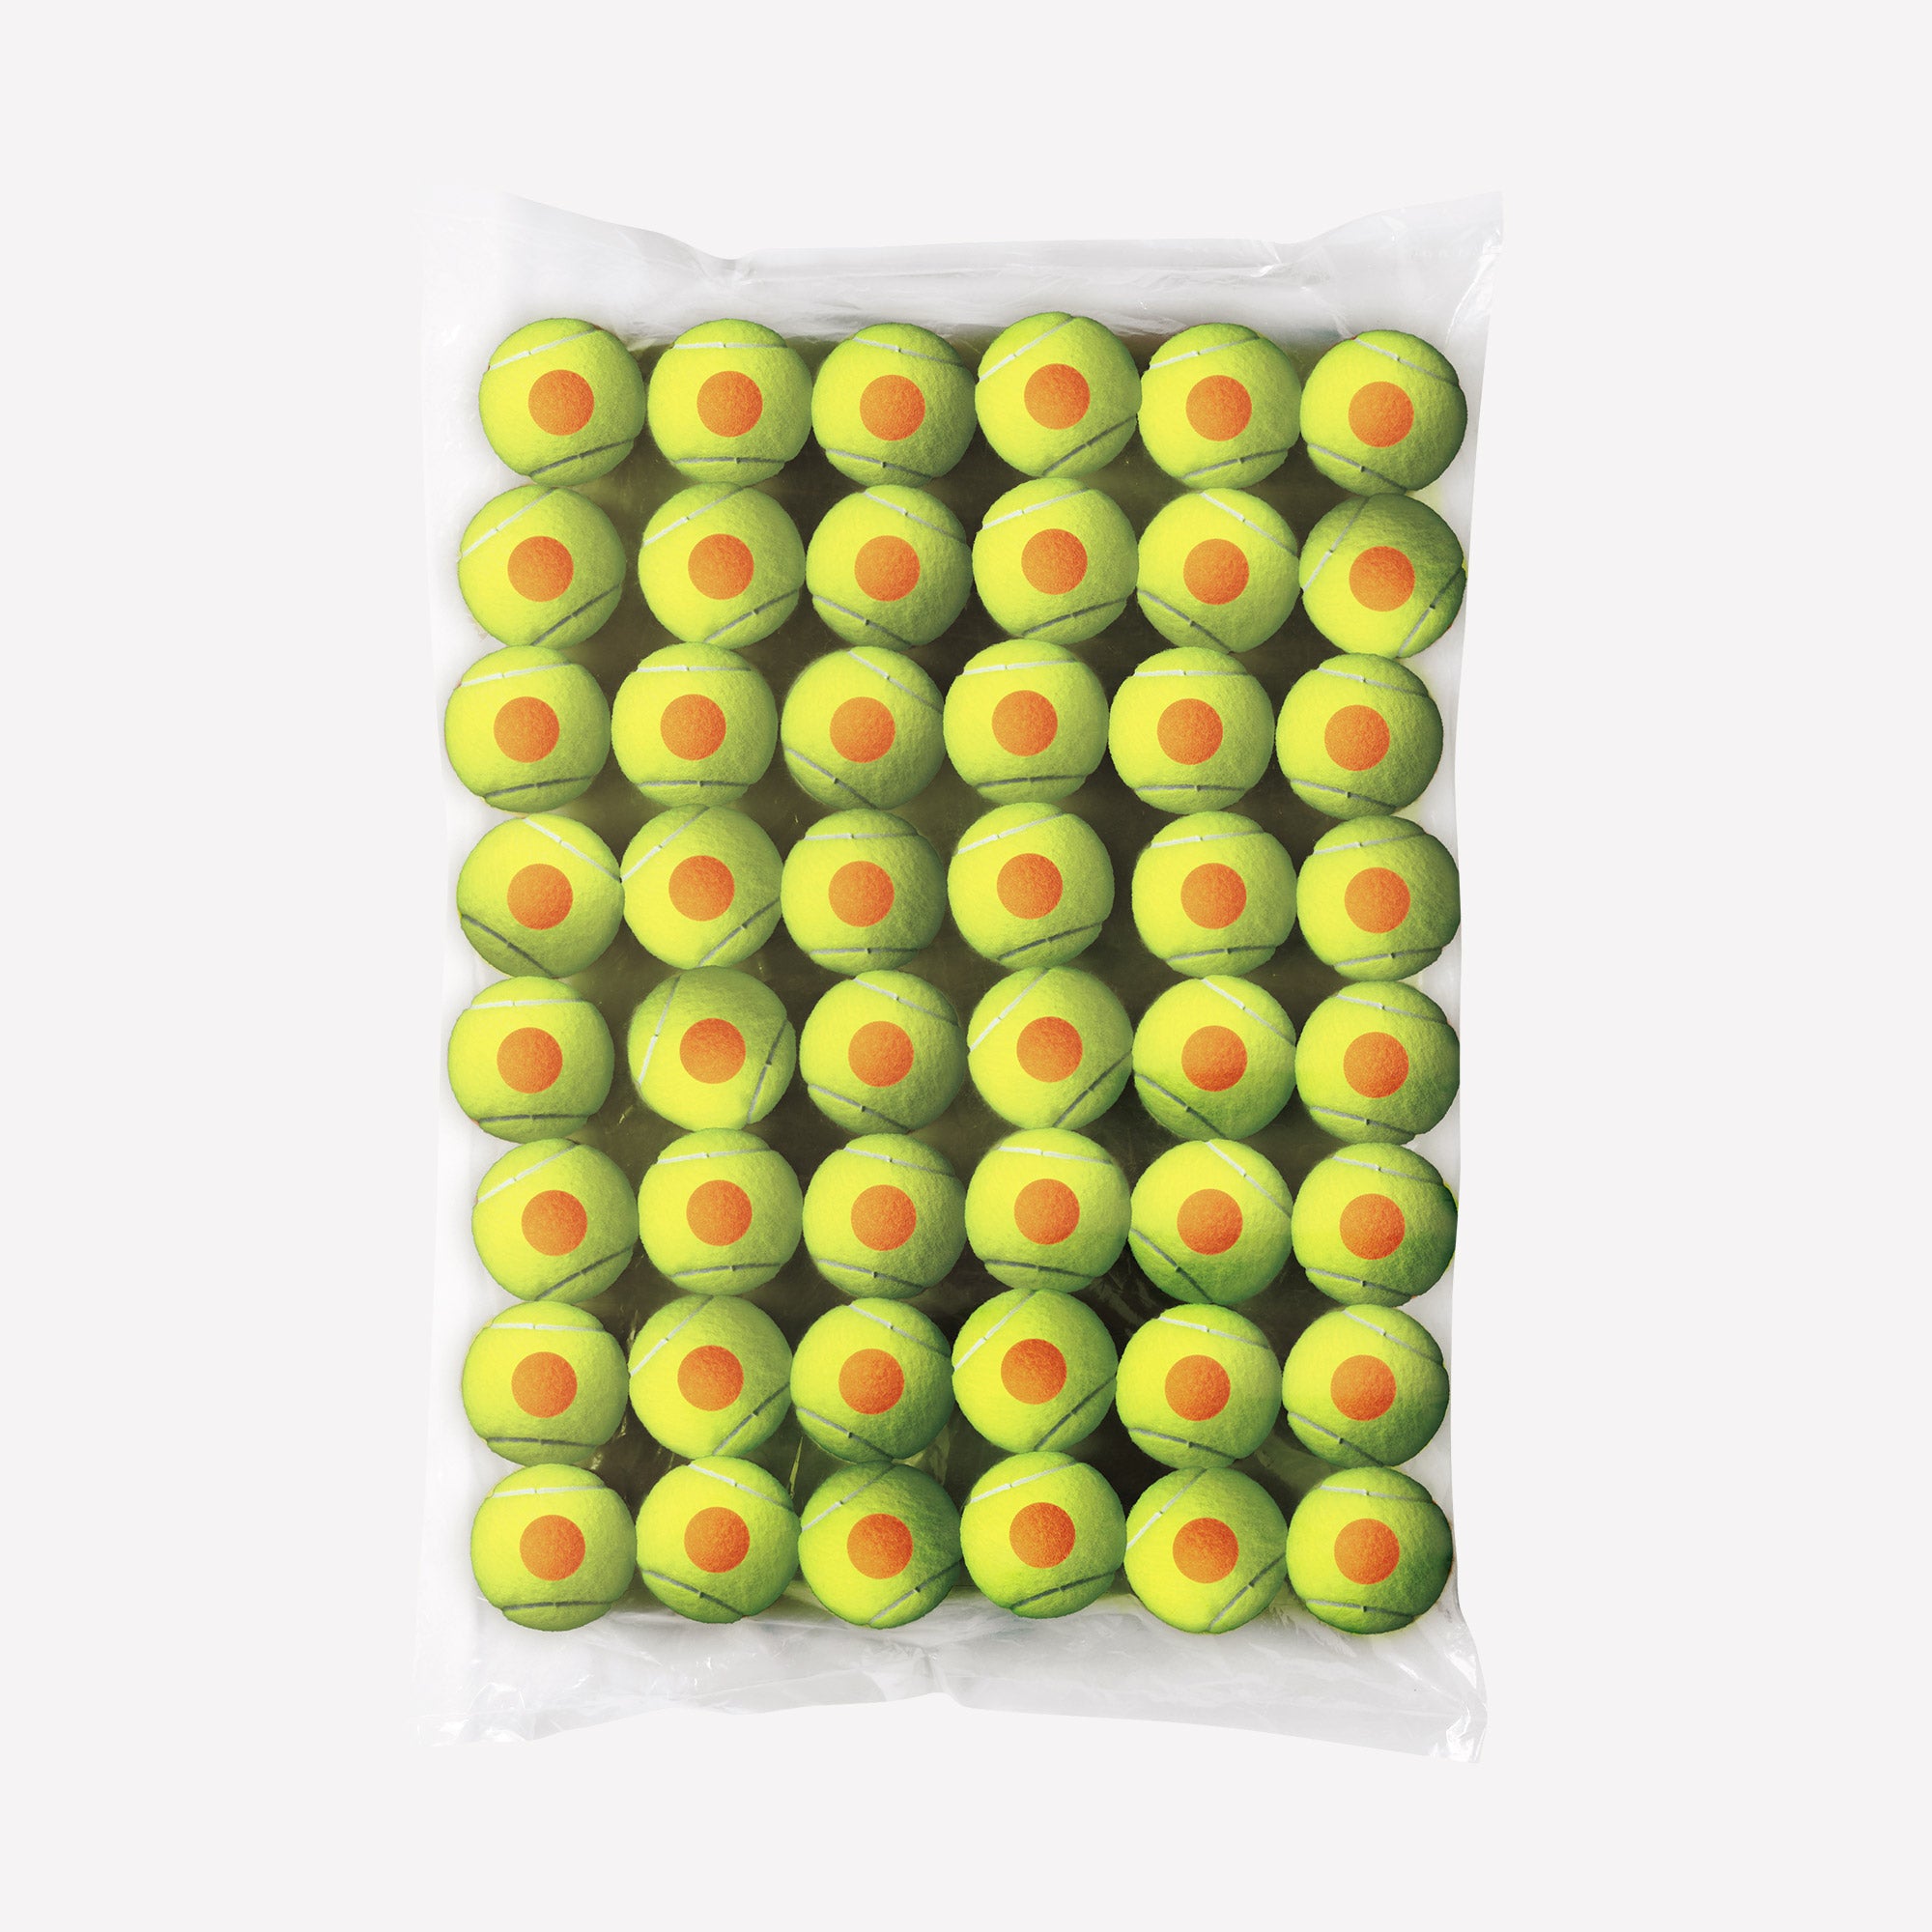 Wilson Starter Orange 48 Tennis balls 1